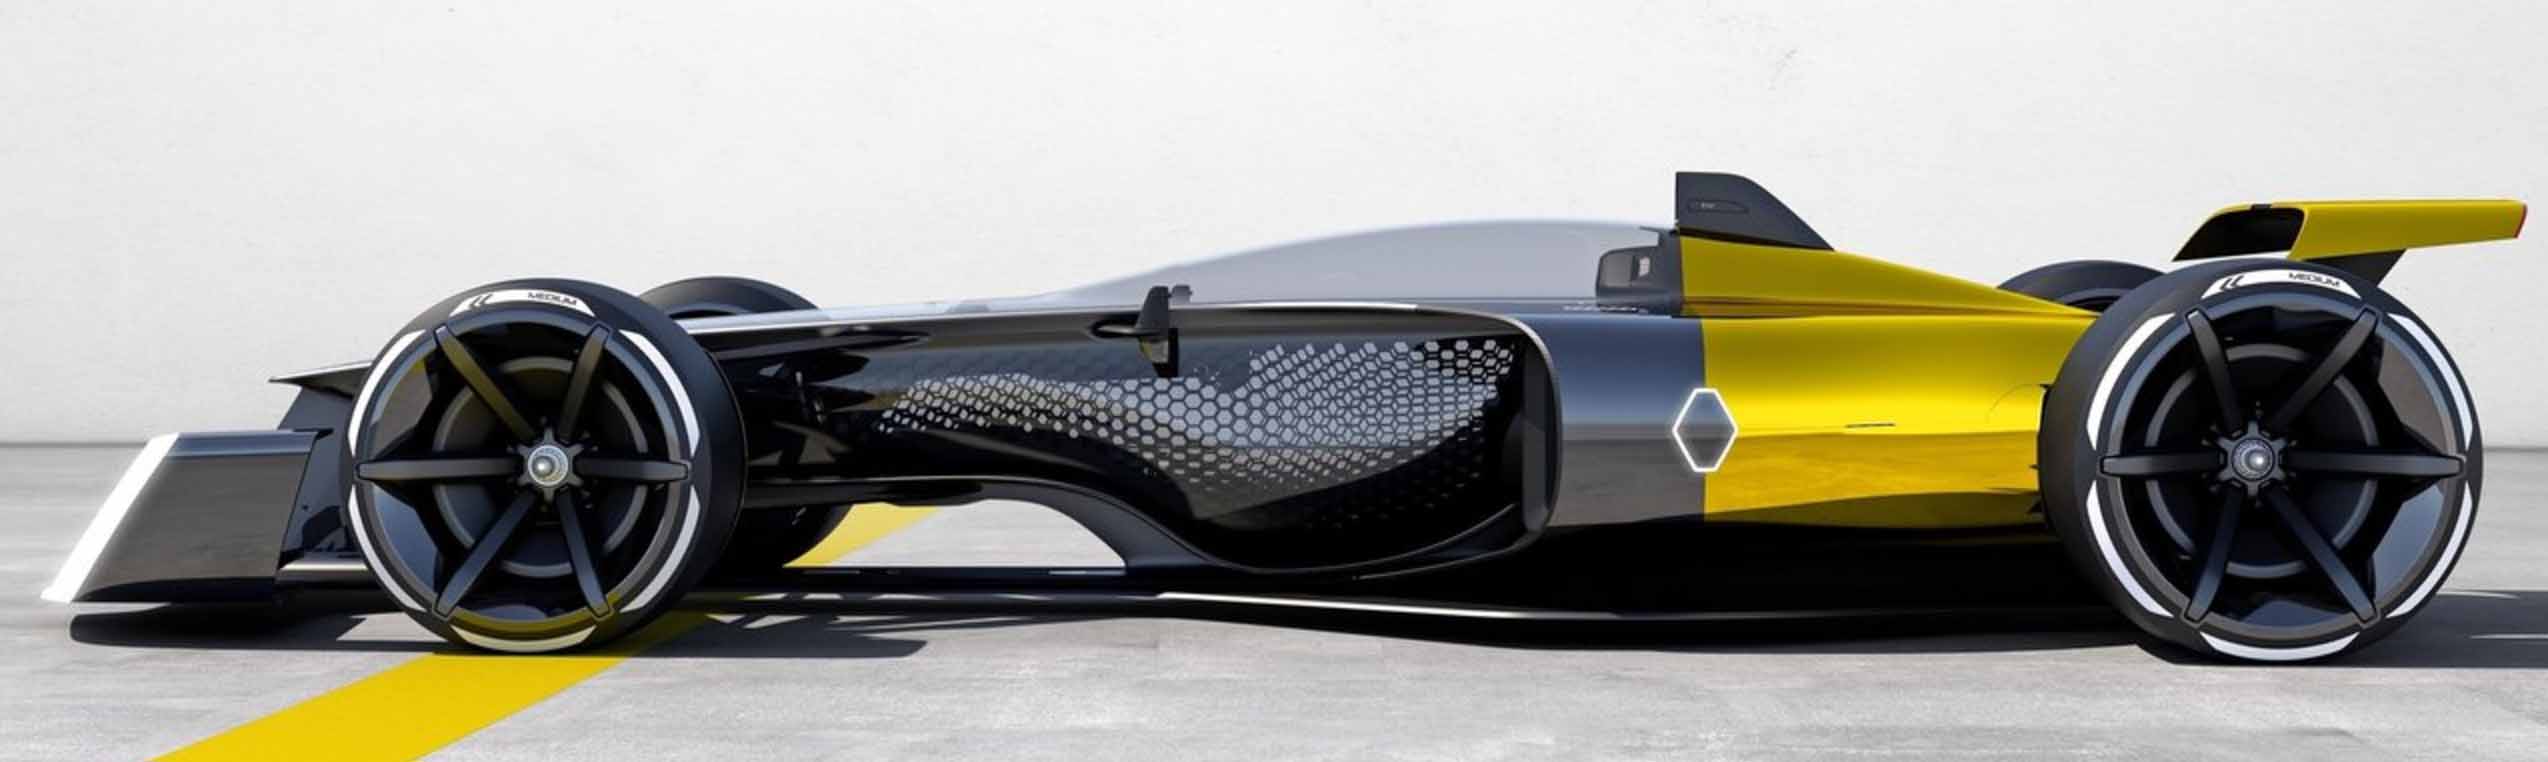 R.S. 2027 Vision , F1 konceptbilen från Renault Sport